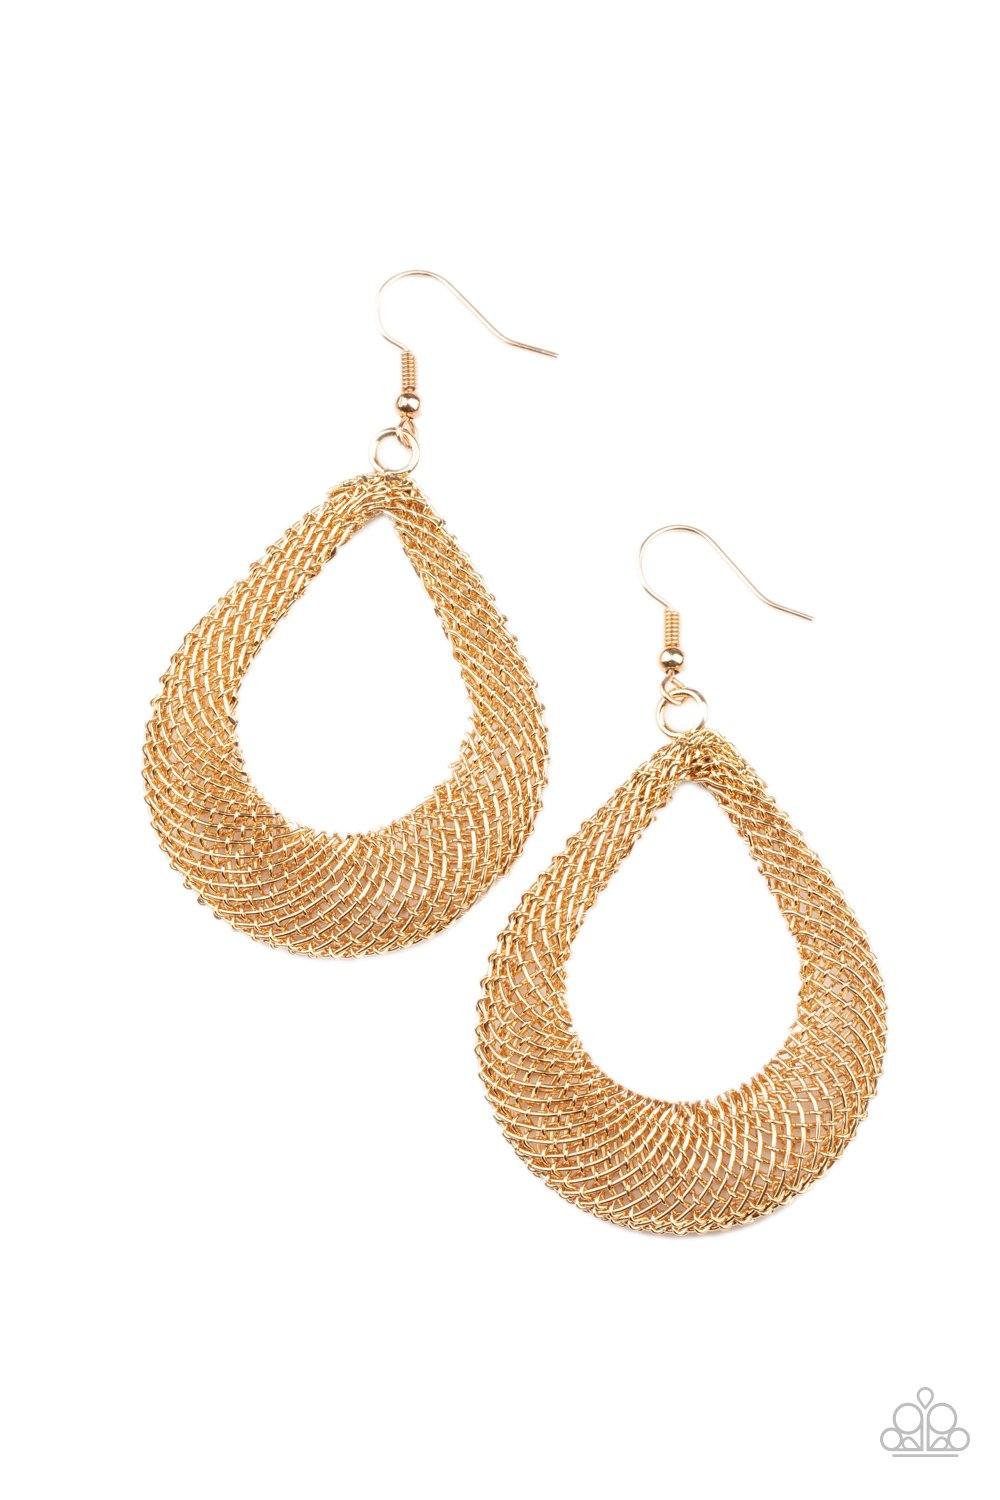 A Hot MESH Gold
Earrings - Daria's Blings N Things